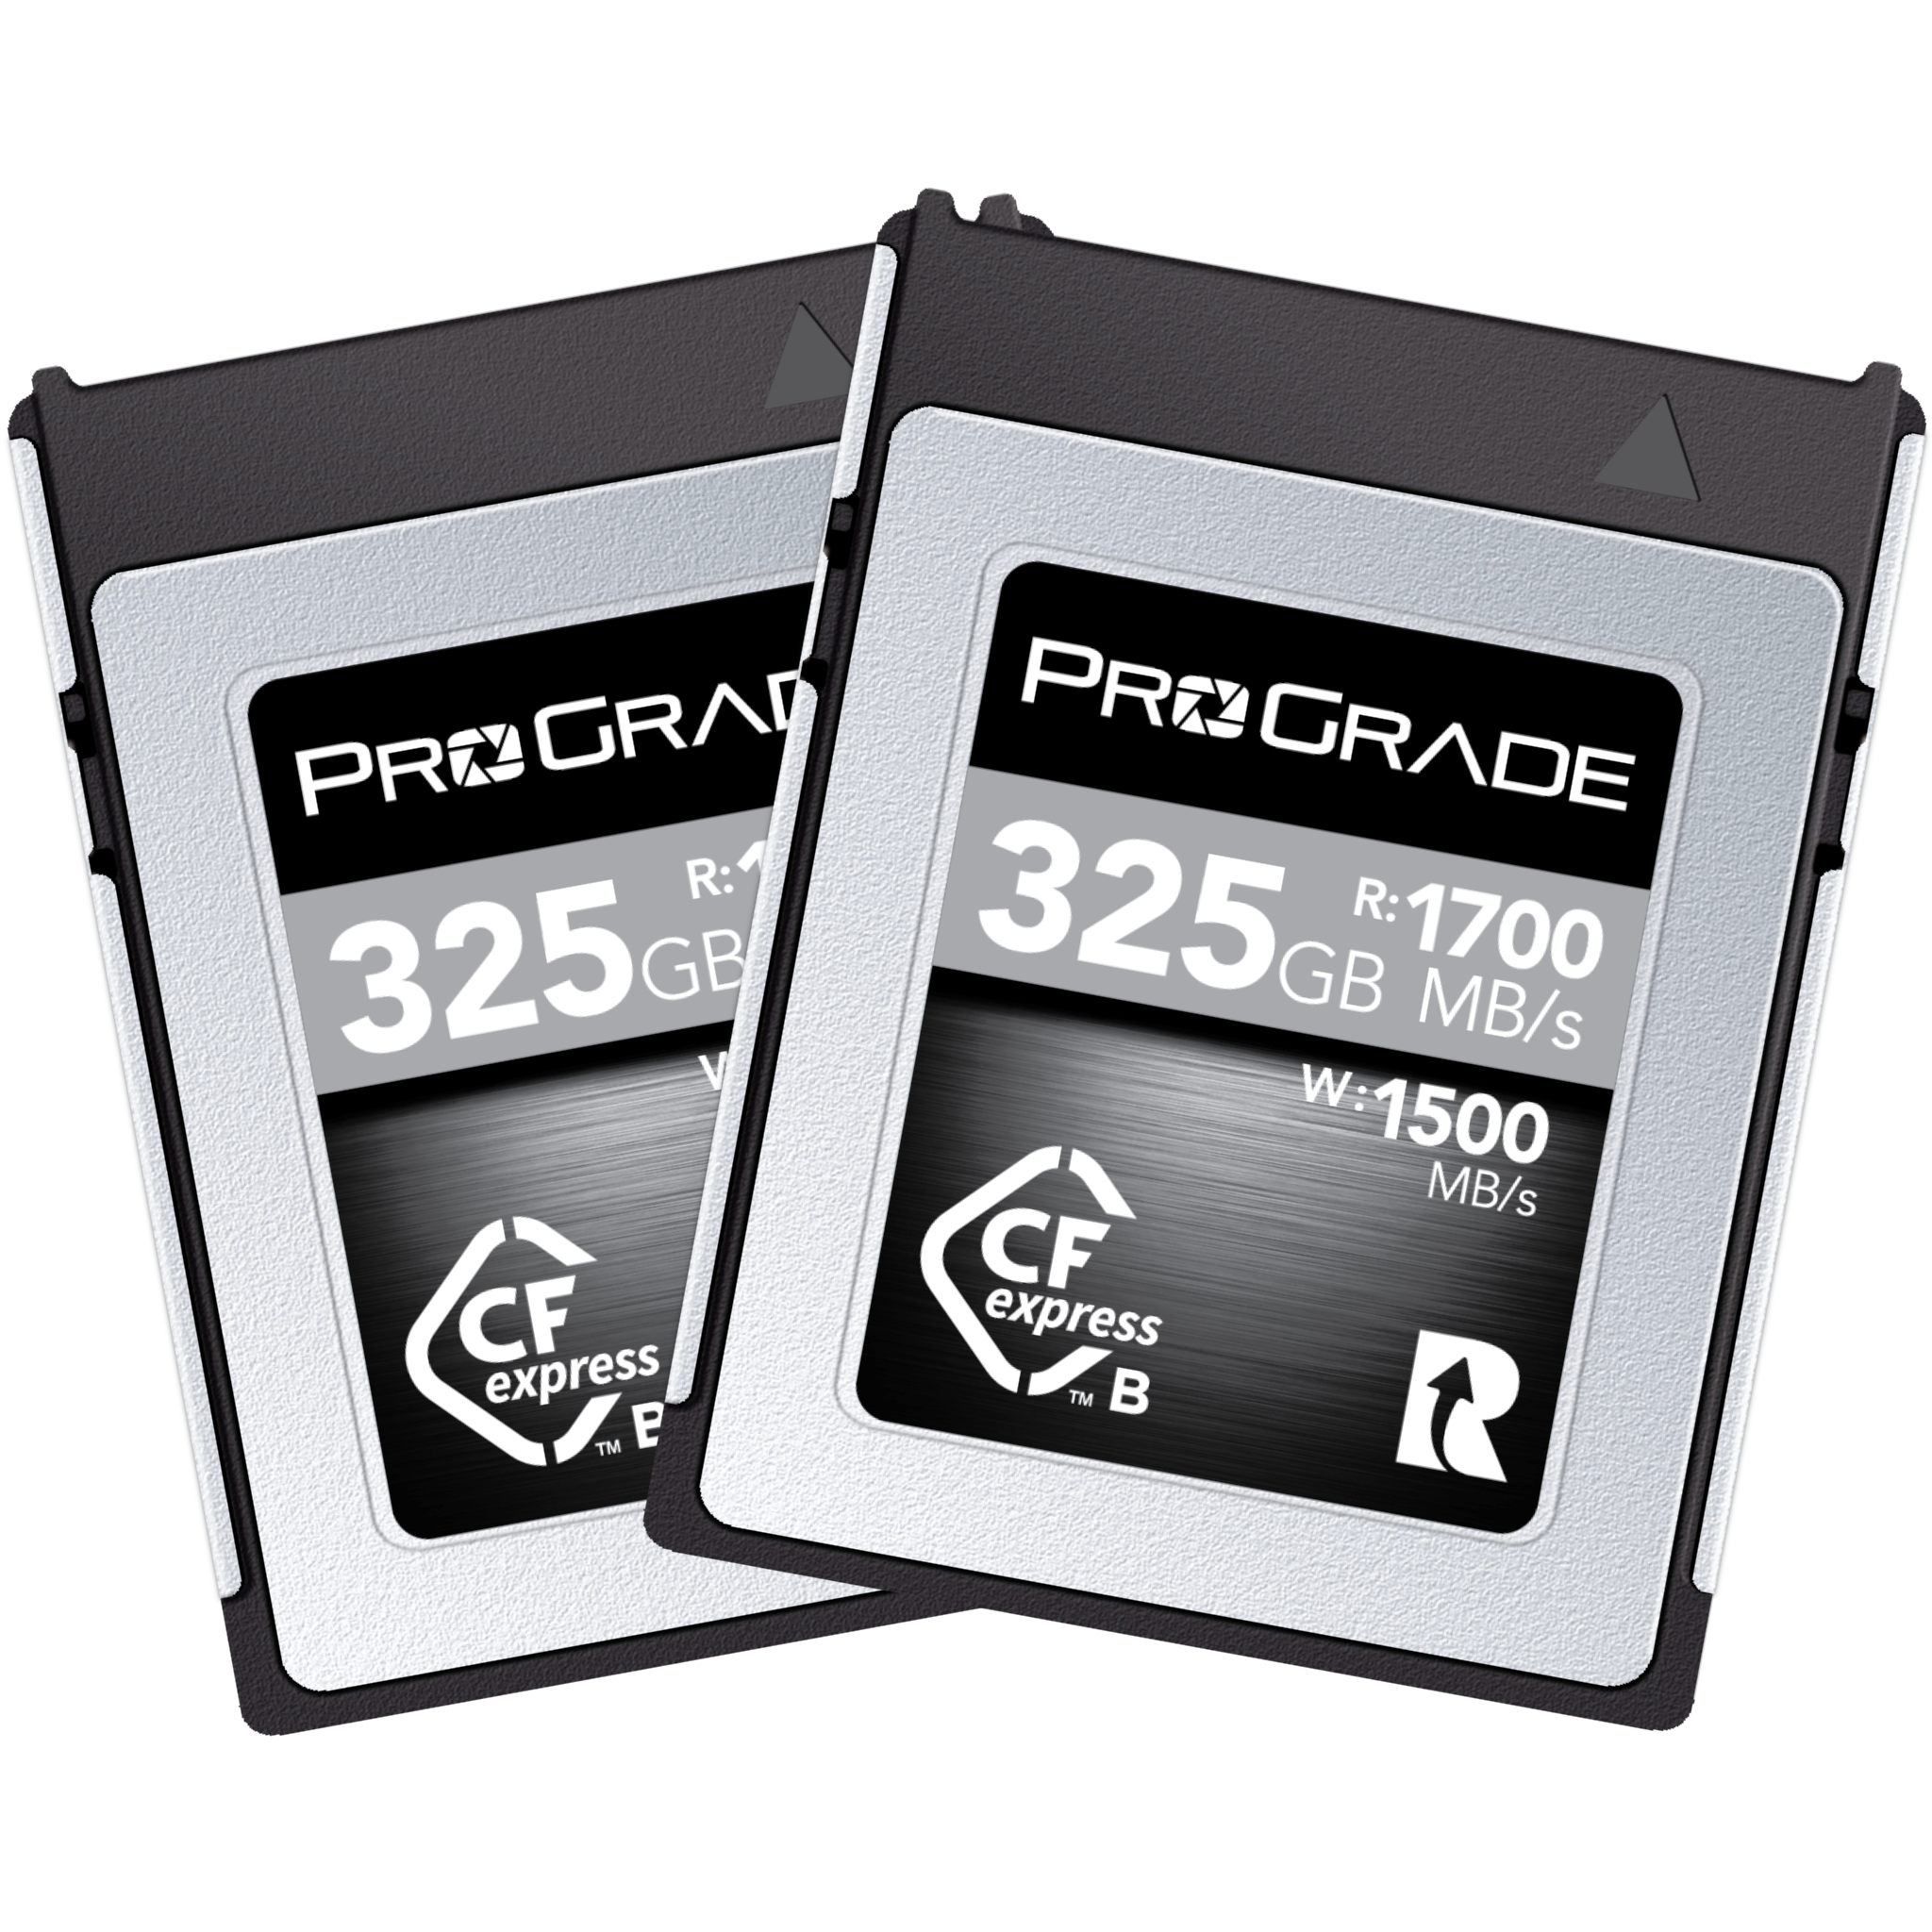 ProGrade Digital 256GB CFexpress(値下げ)